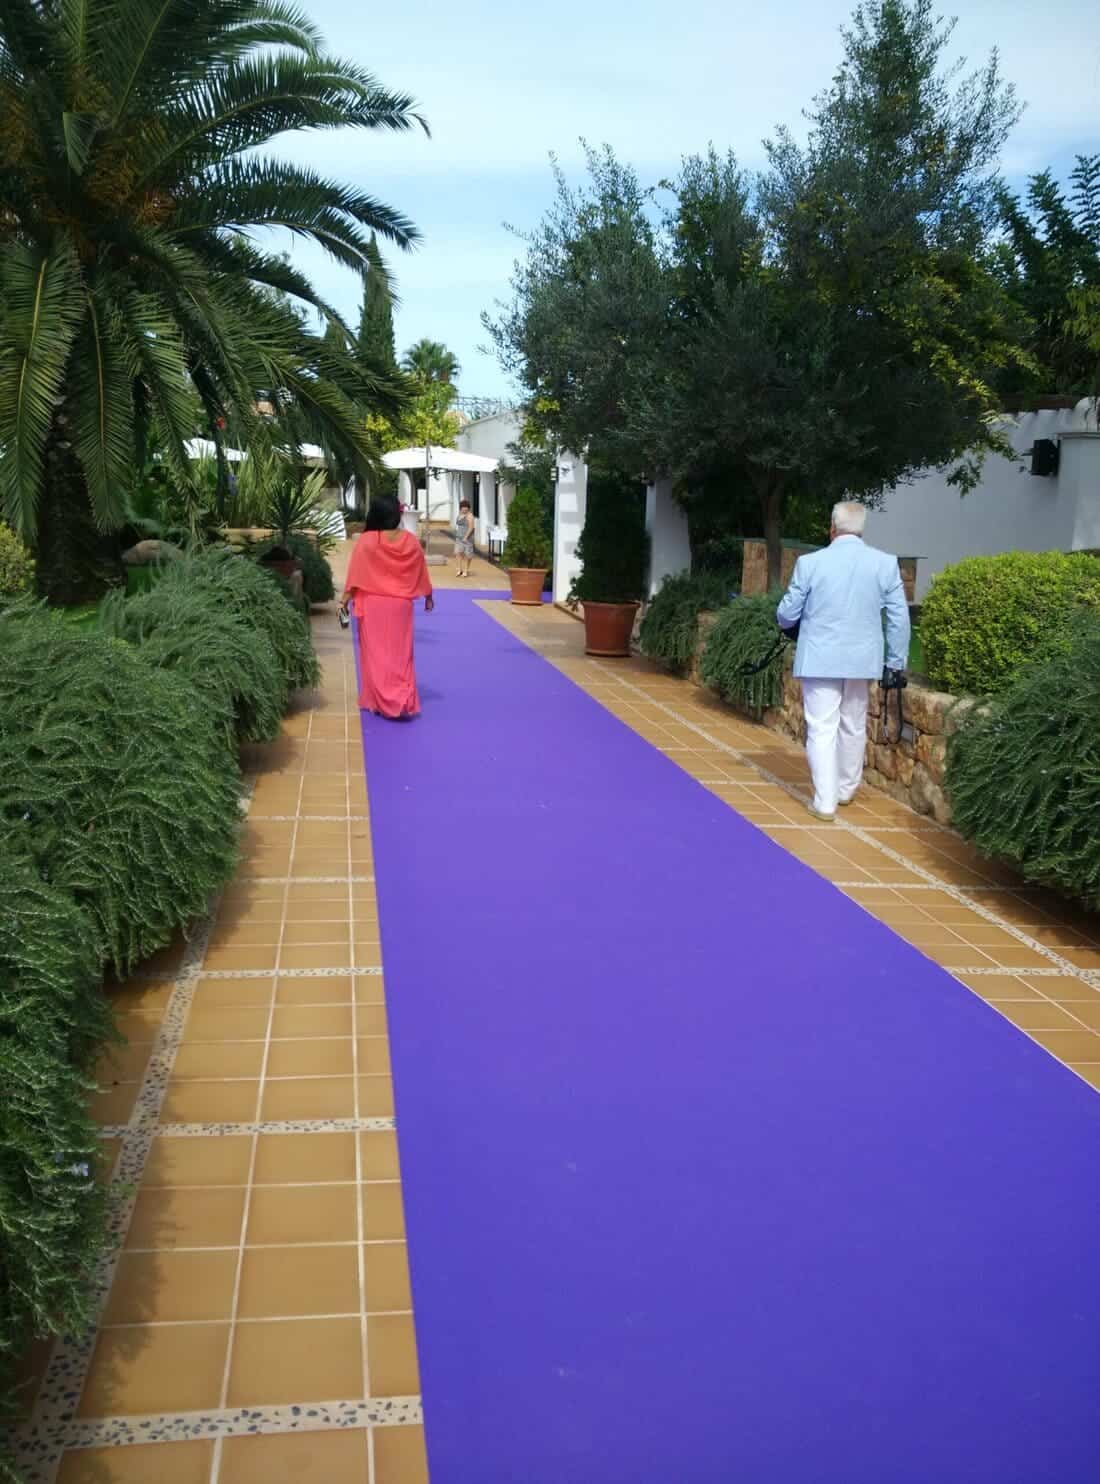 Moqueta para cubrir el suelo de acceso a un evento o boda. Evita deslizamientos y decora el espacio con alfombras o moquetas diseñadas para todo tipo de pavimentos.